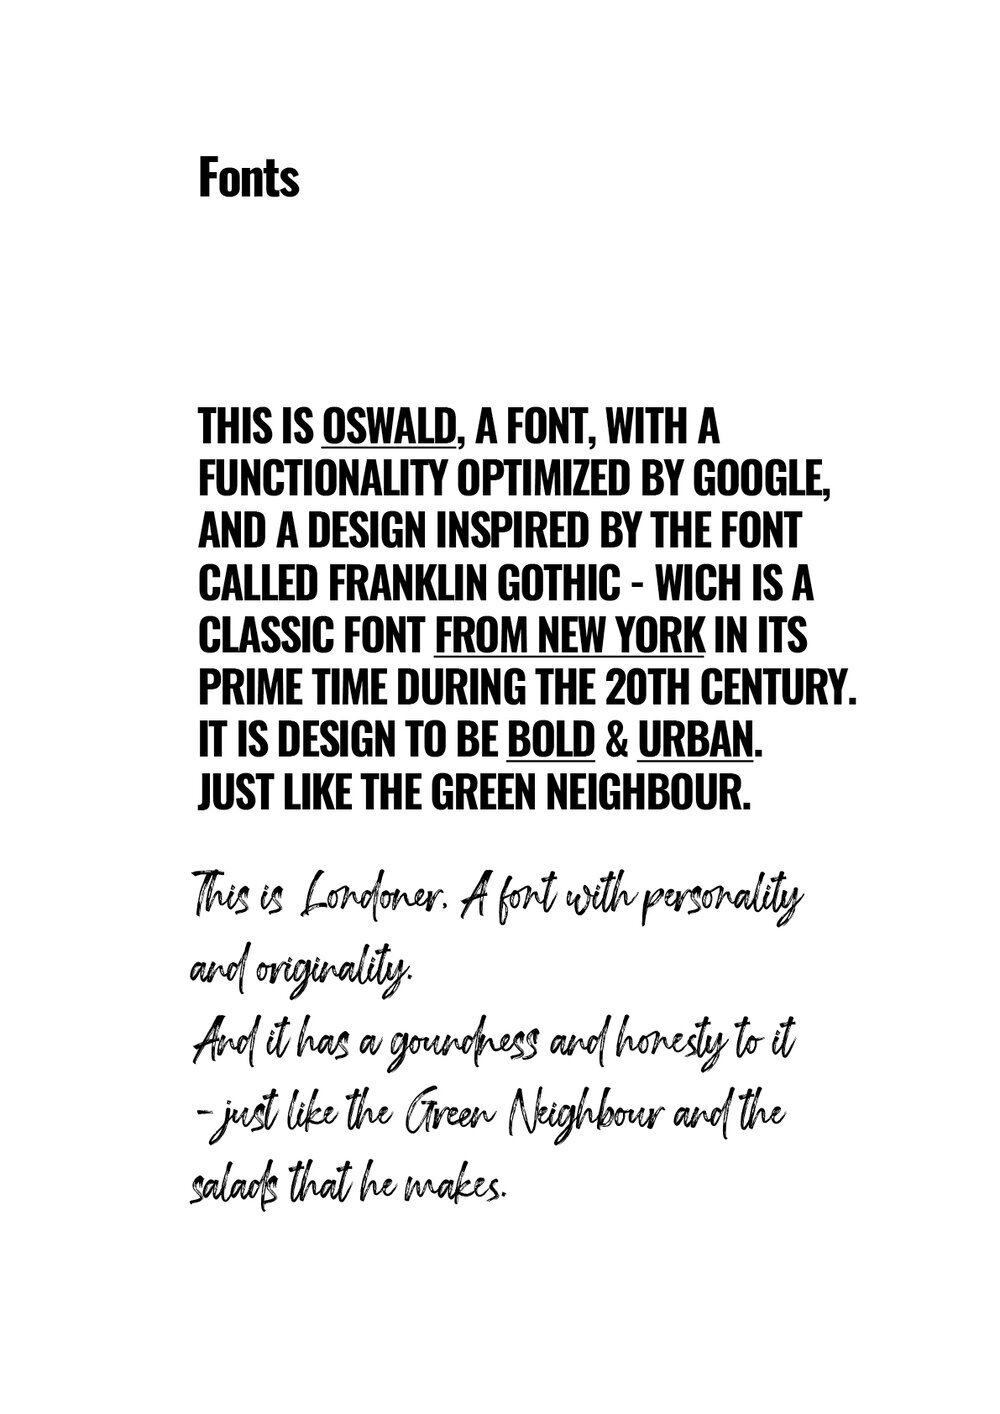 green-neighbour+copy.jpg